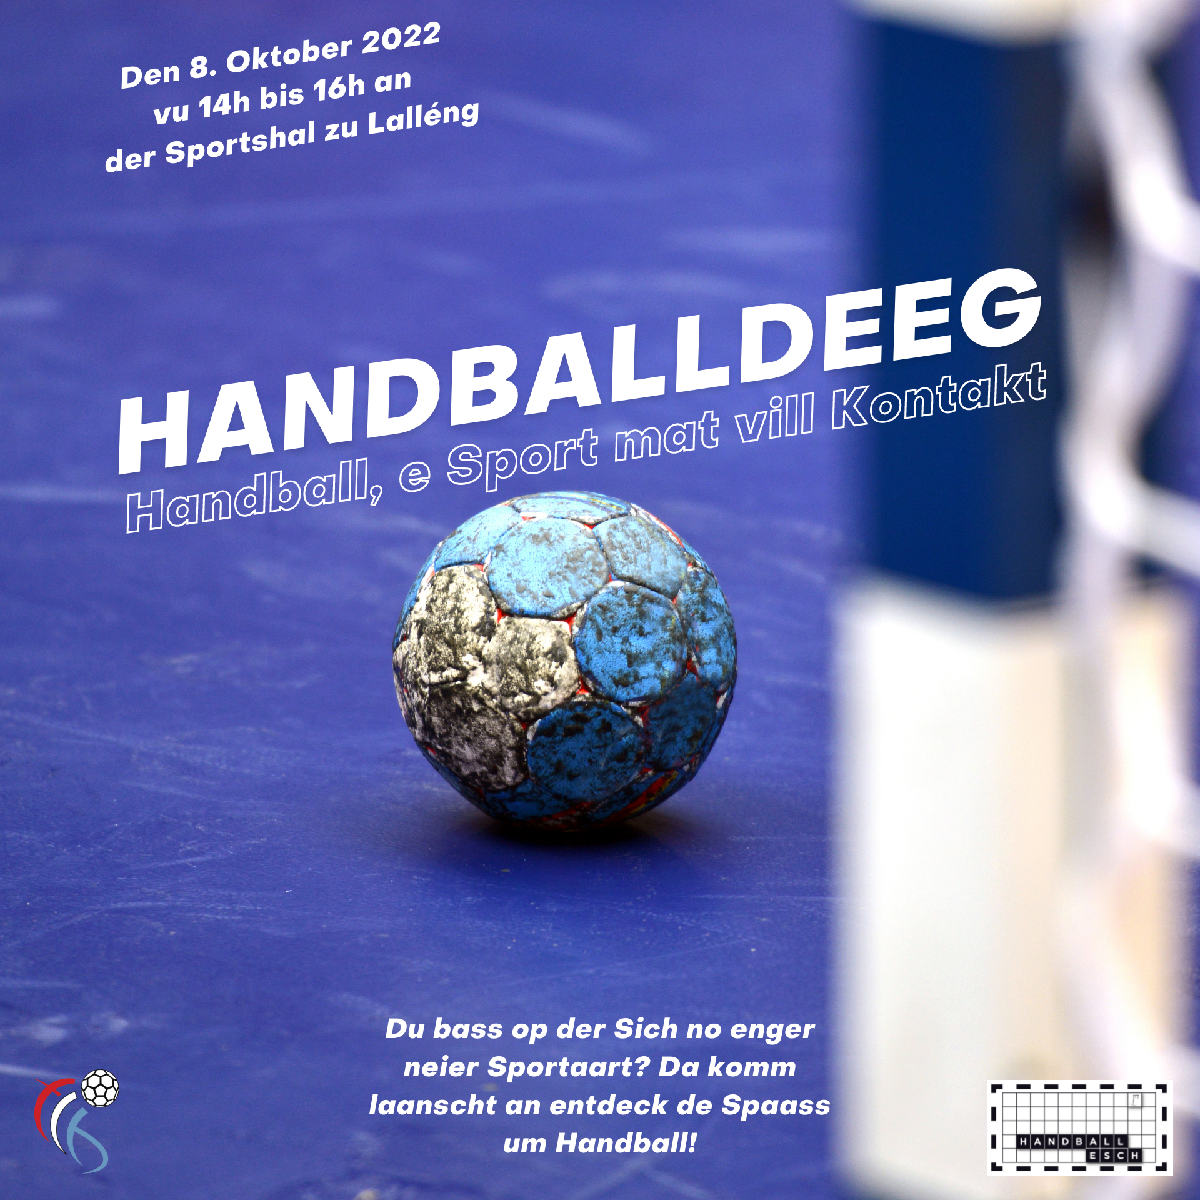 HANDBALLDEEG 08.10.2022 - 14-16h00